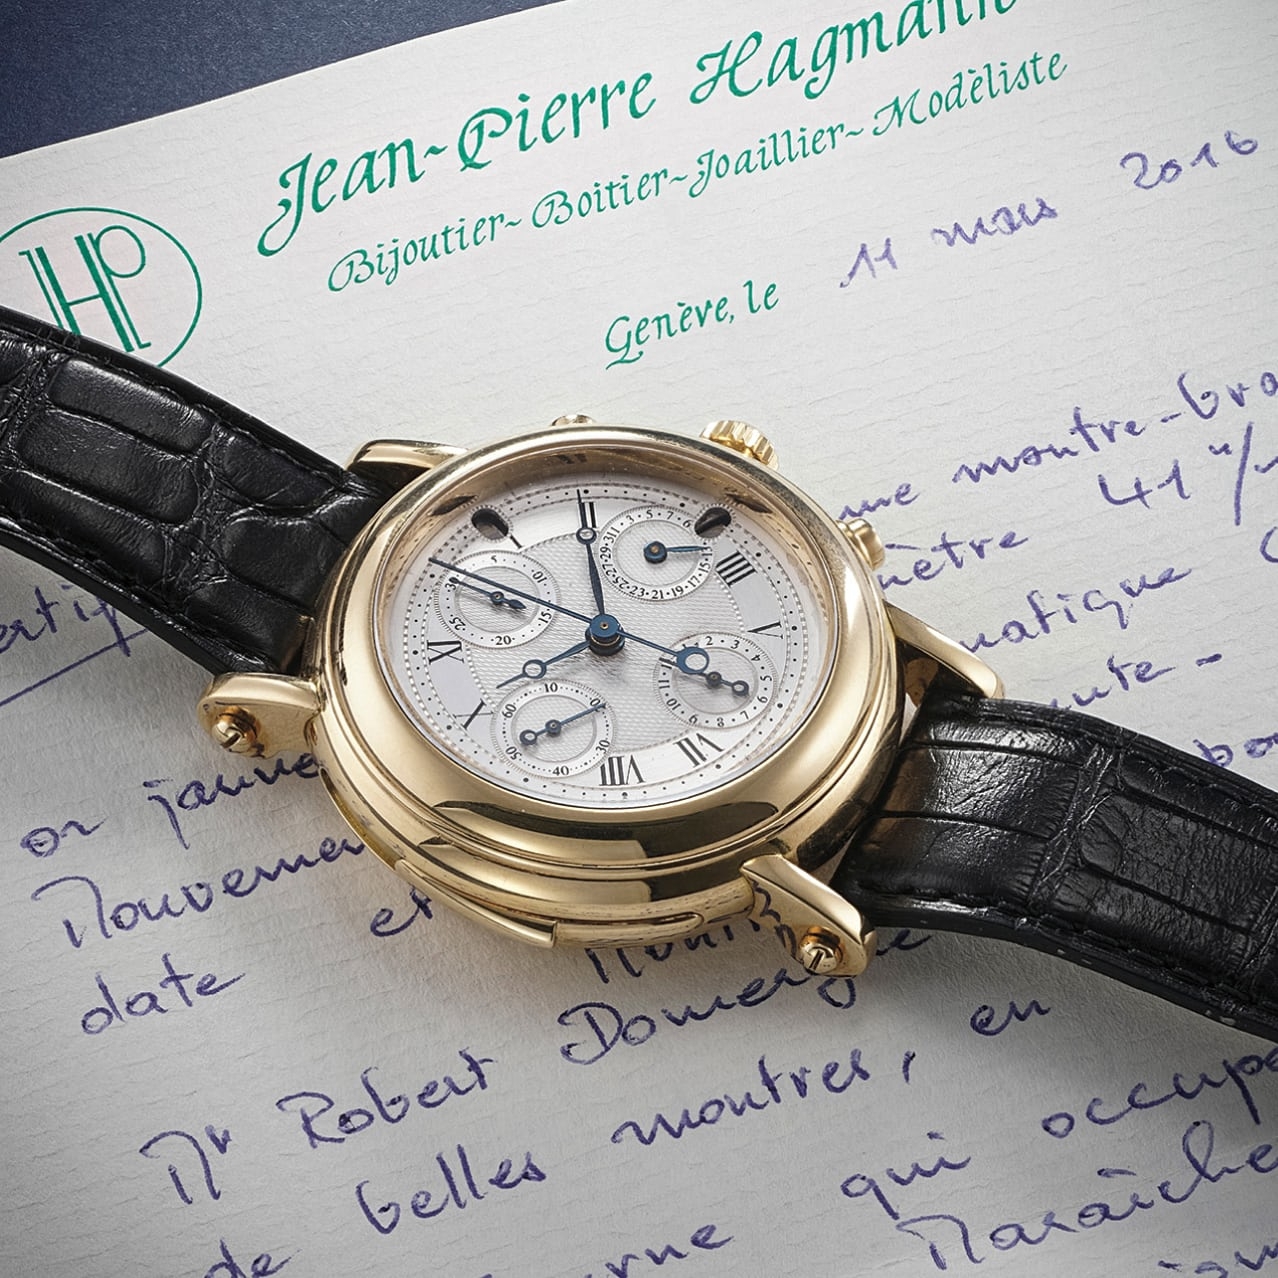 Đồng hồ được làm bởi J.P. Hagmann và F.P. Journe